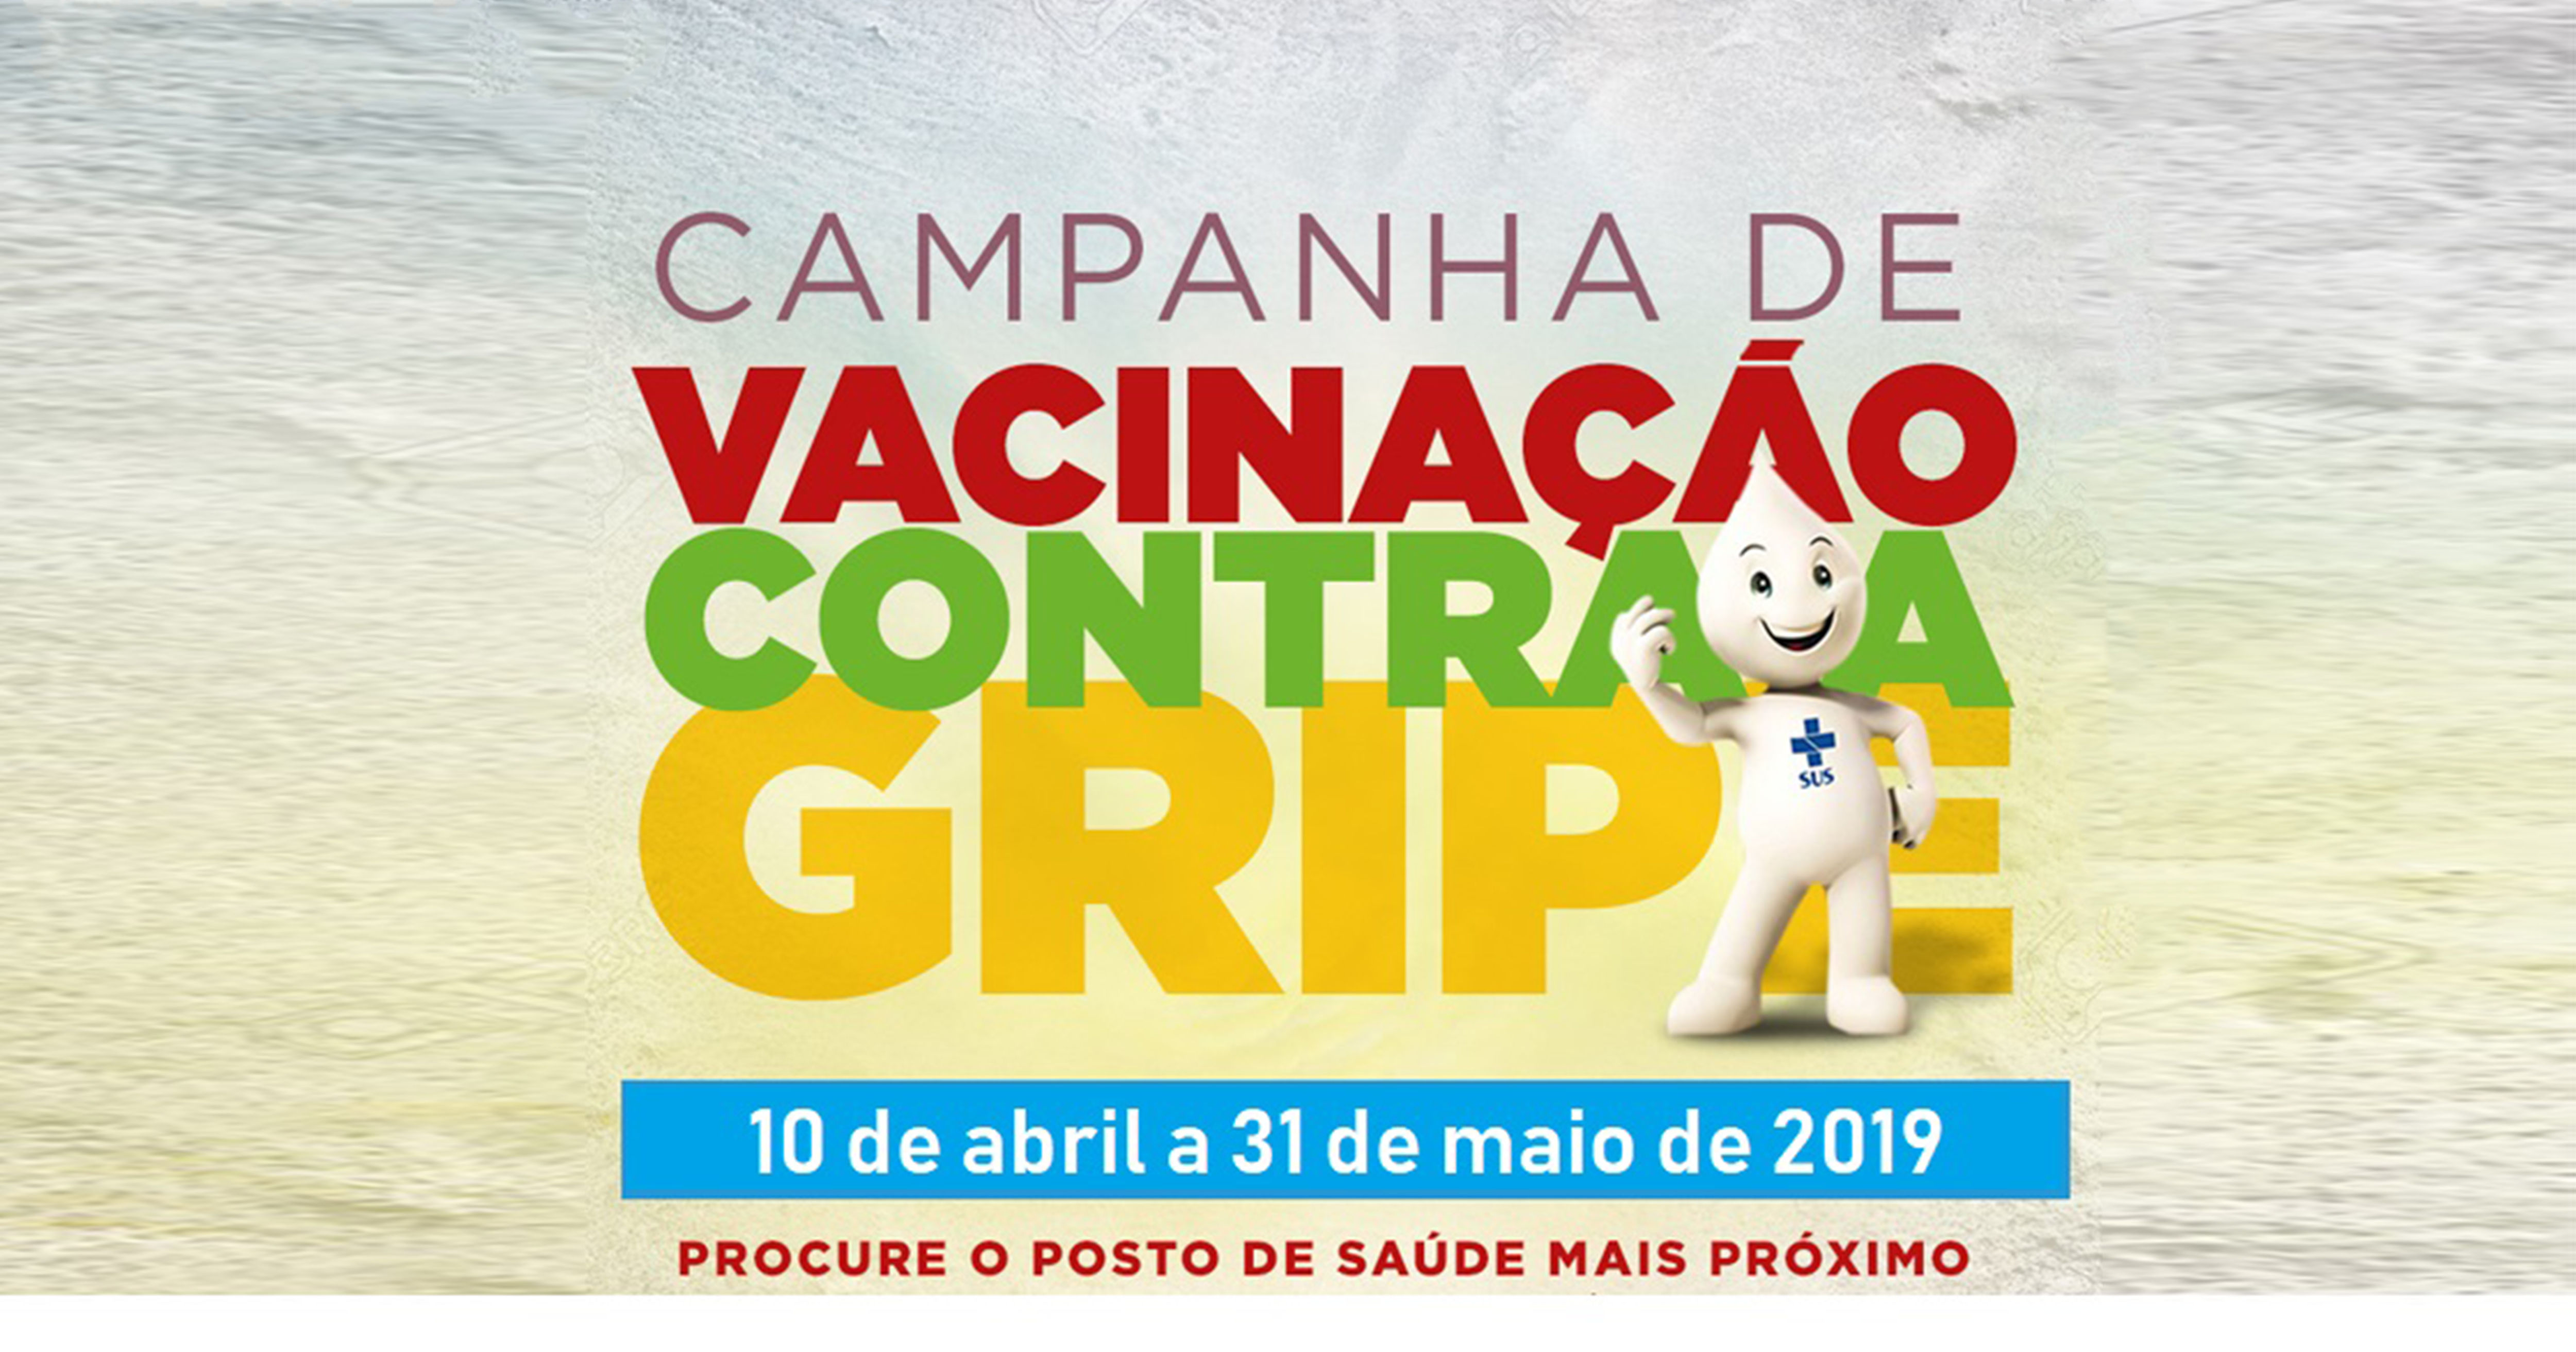 Influenza 2019: Campanha de Vacinação contra a gripe começa dia 10 de abril Ministério da Saúde antecipa Campanha Nacional de Vacinação contra Influenza